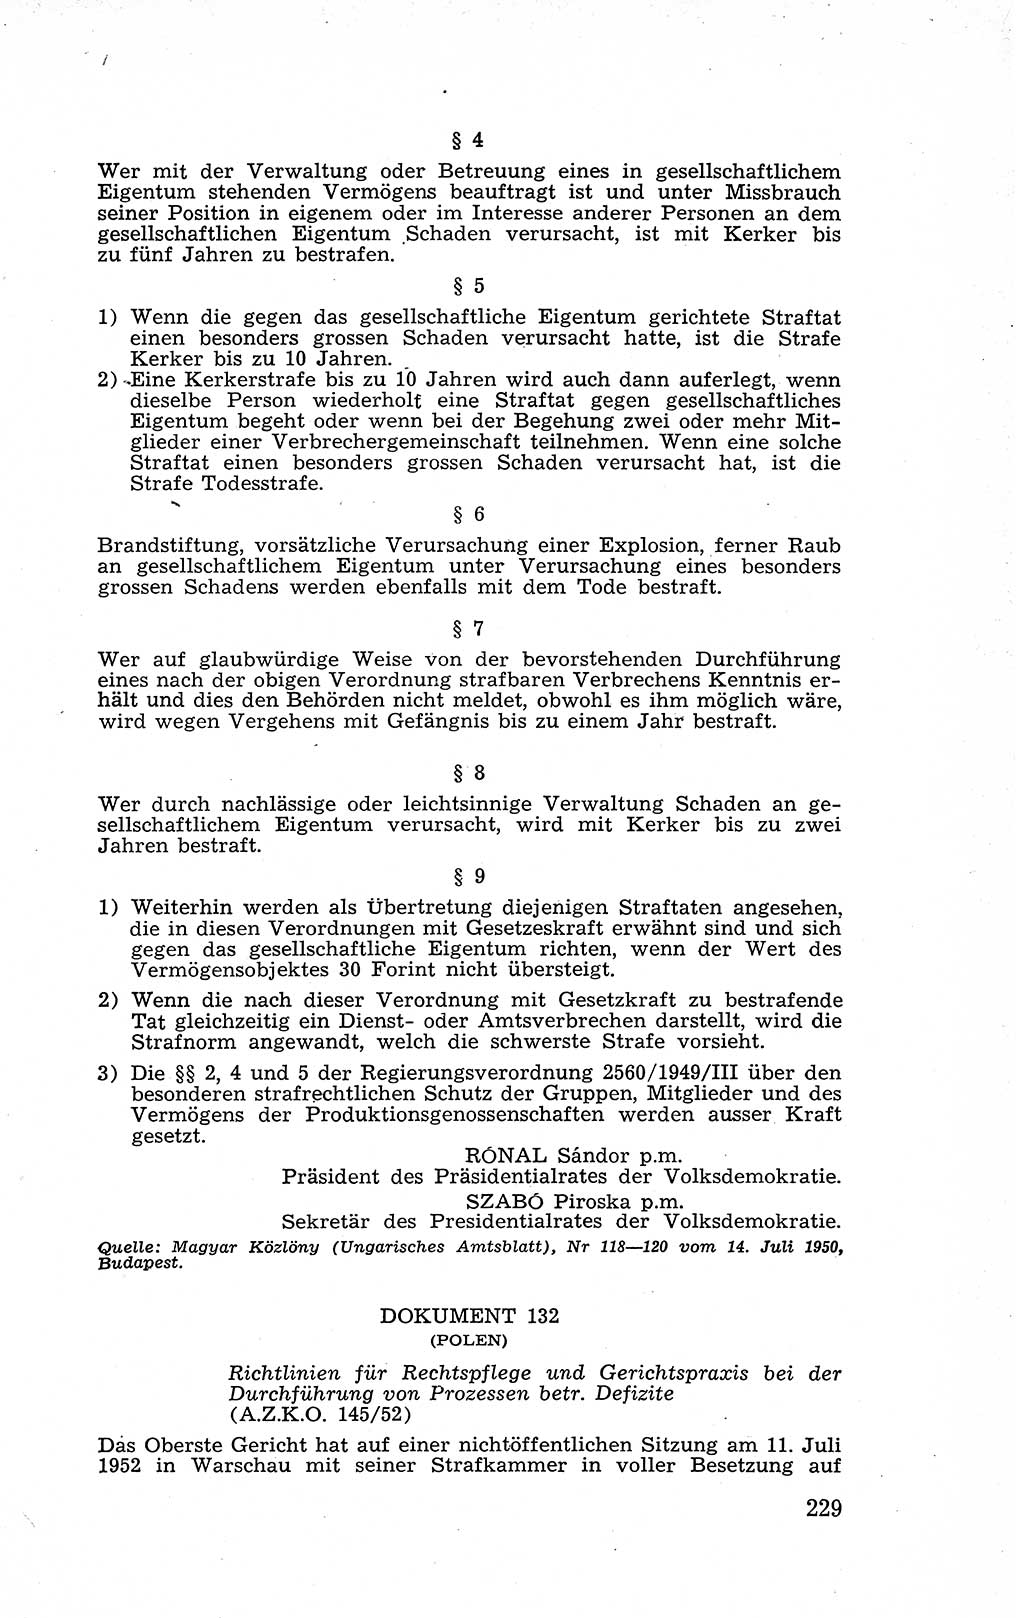 Recht in Fesseln, Dokumente, Internationale Juristen-Kommission [Bundesrepublik Deutschland (BRD)] 1955, Seite 229 (R. Dok. IJK BRD 1955, S. 229)